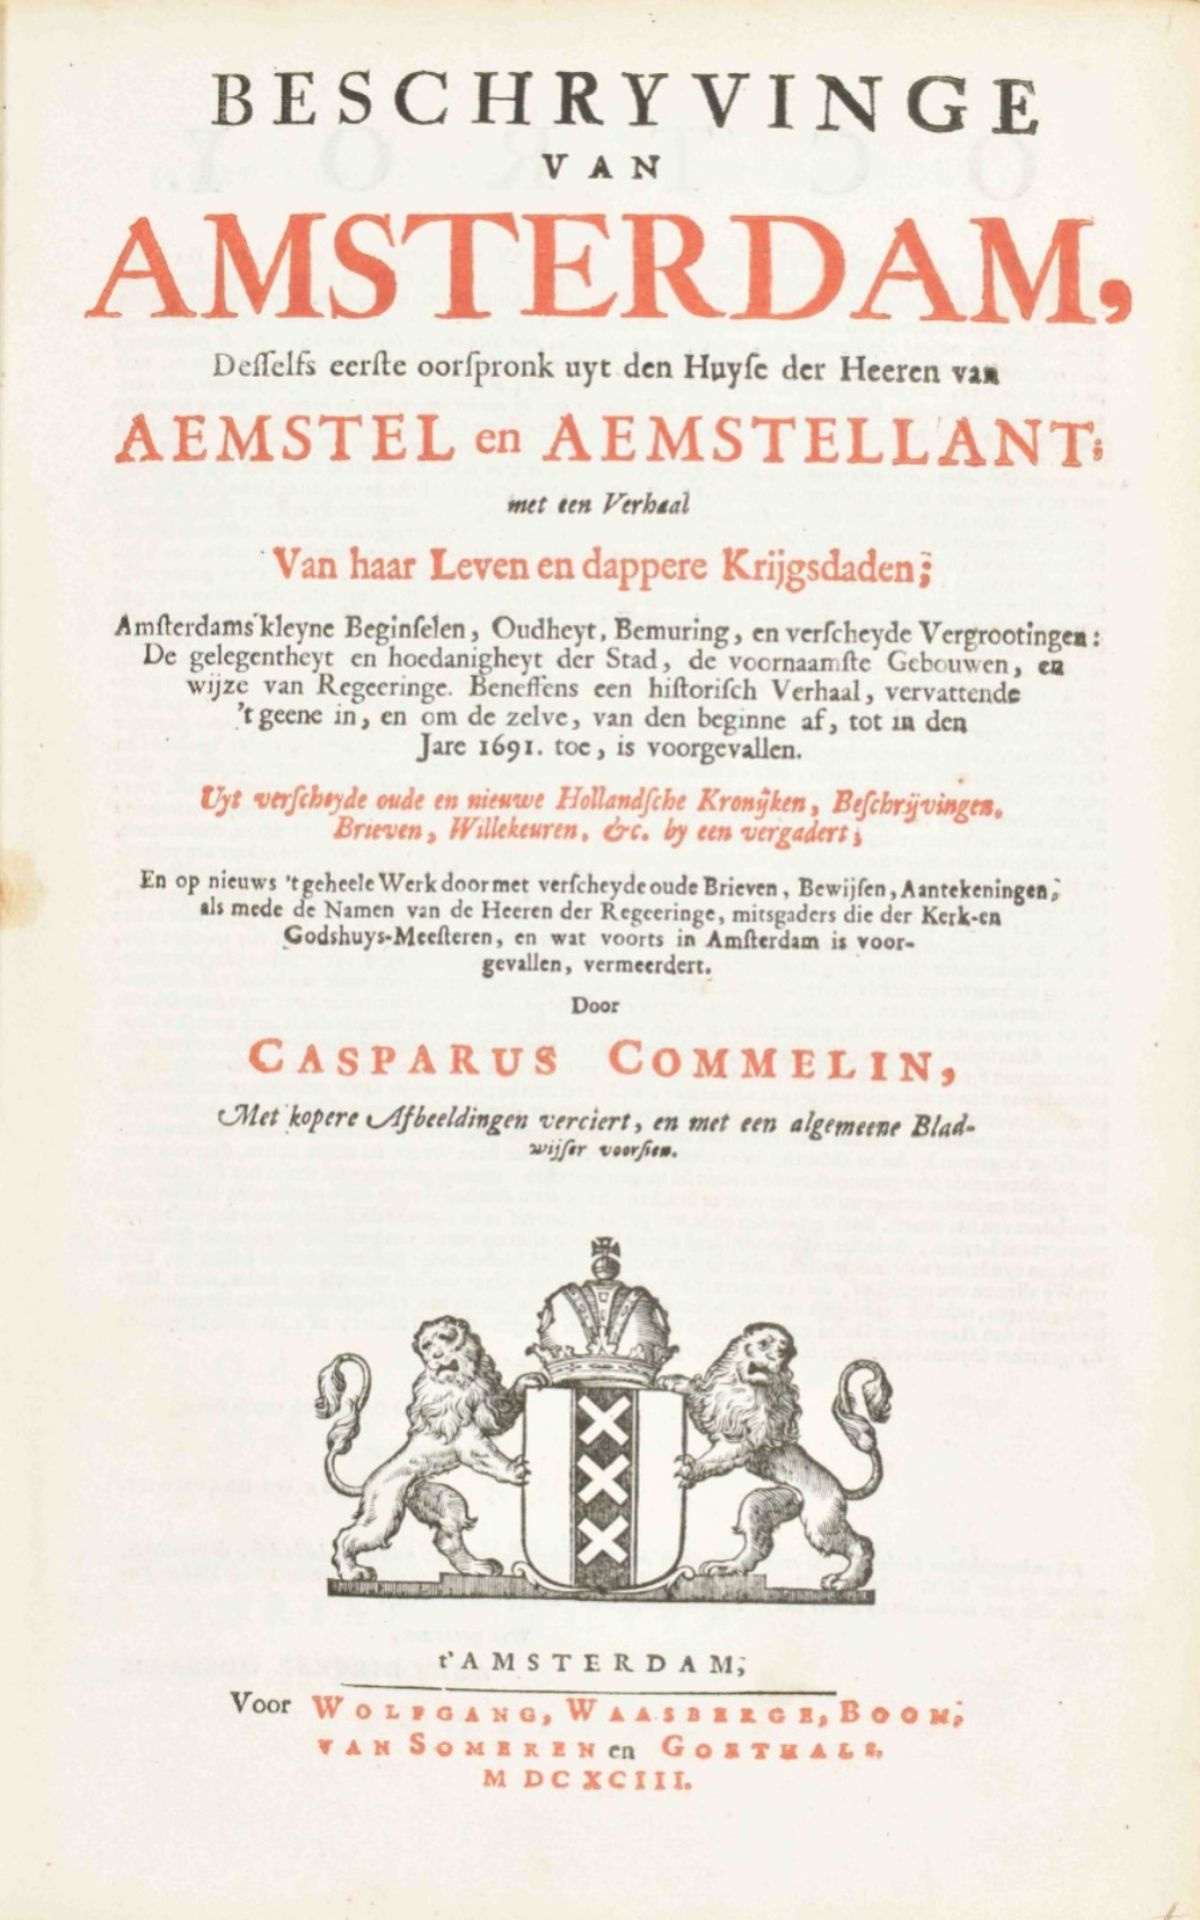 Casparus Commelin. Beschryvinge van Amsterdam, - Image 2 of 10